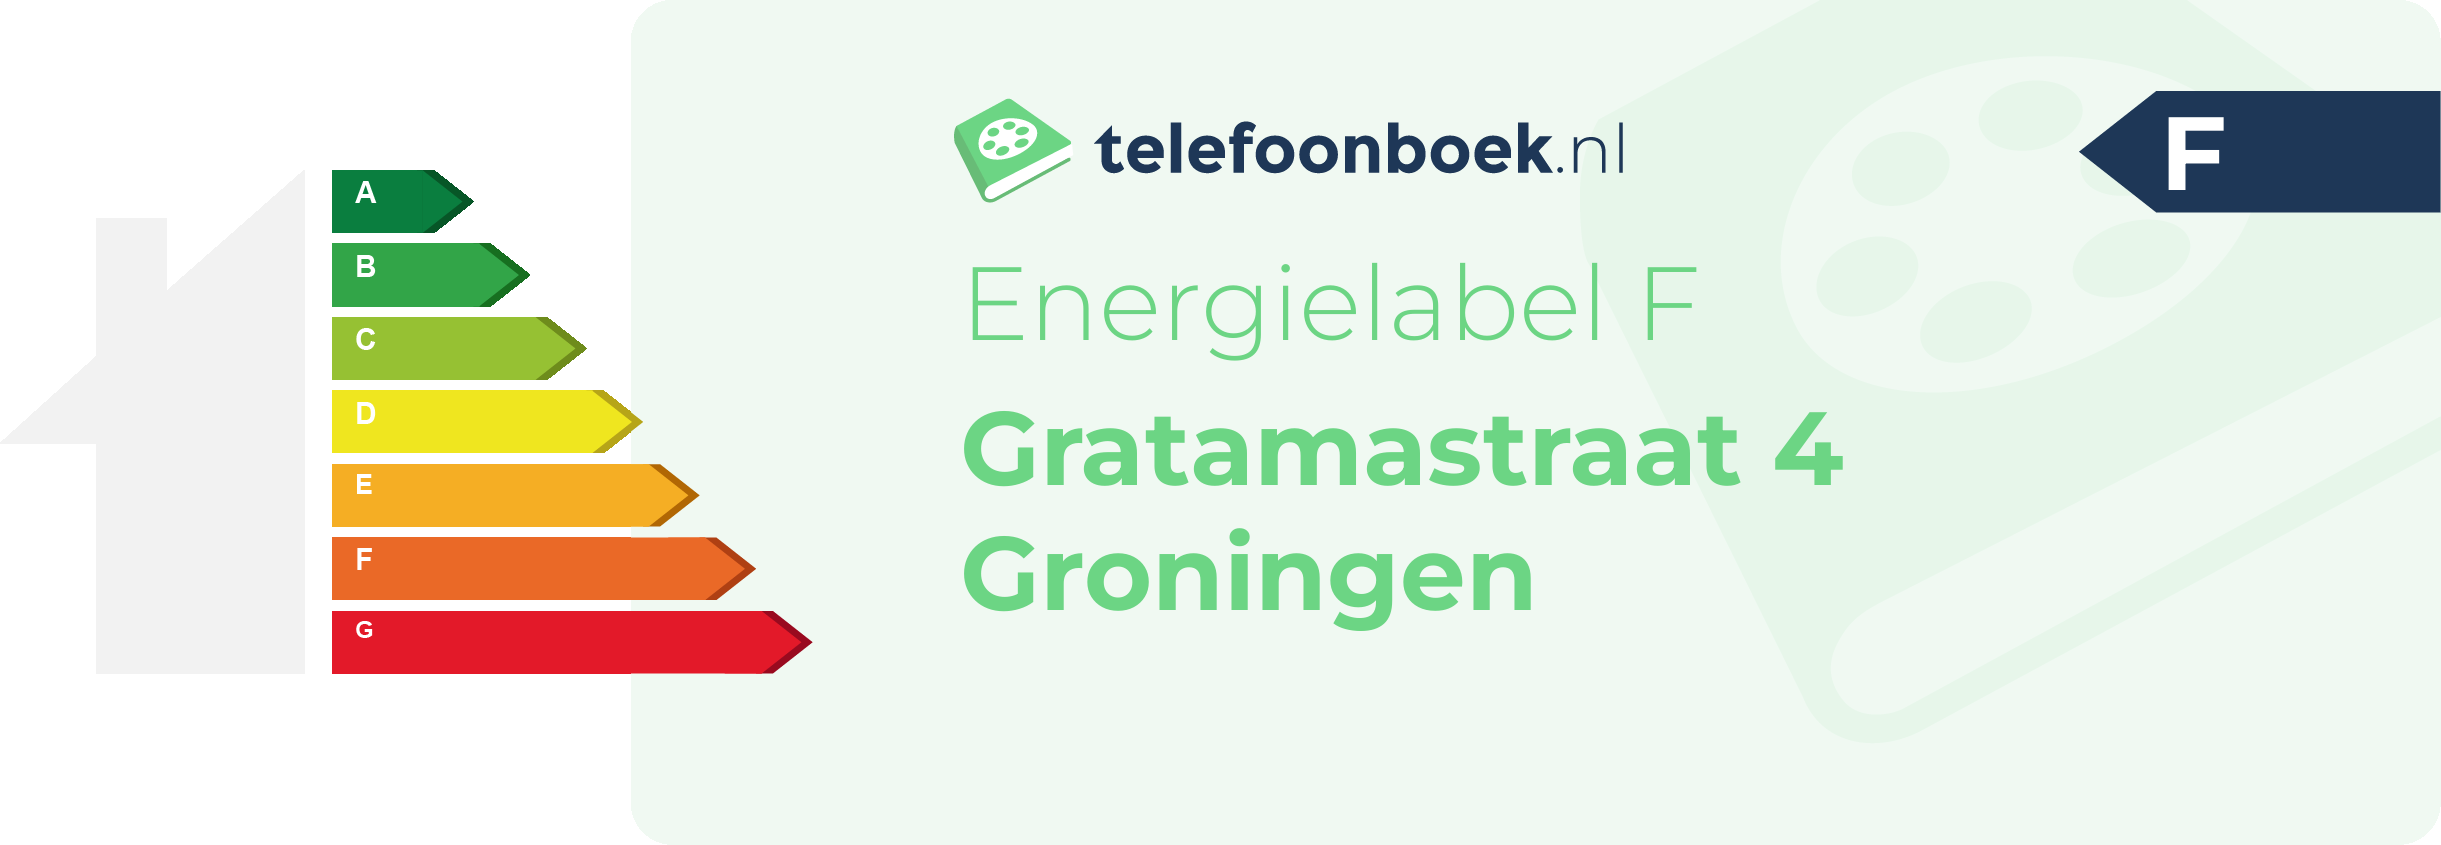 Energielabel Gratamastraat 4 Groningen